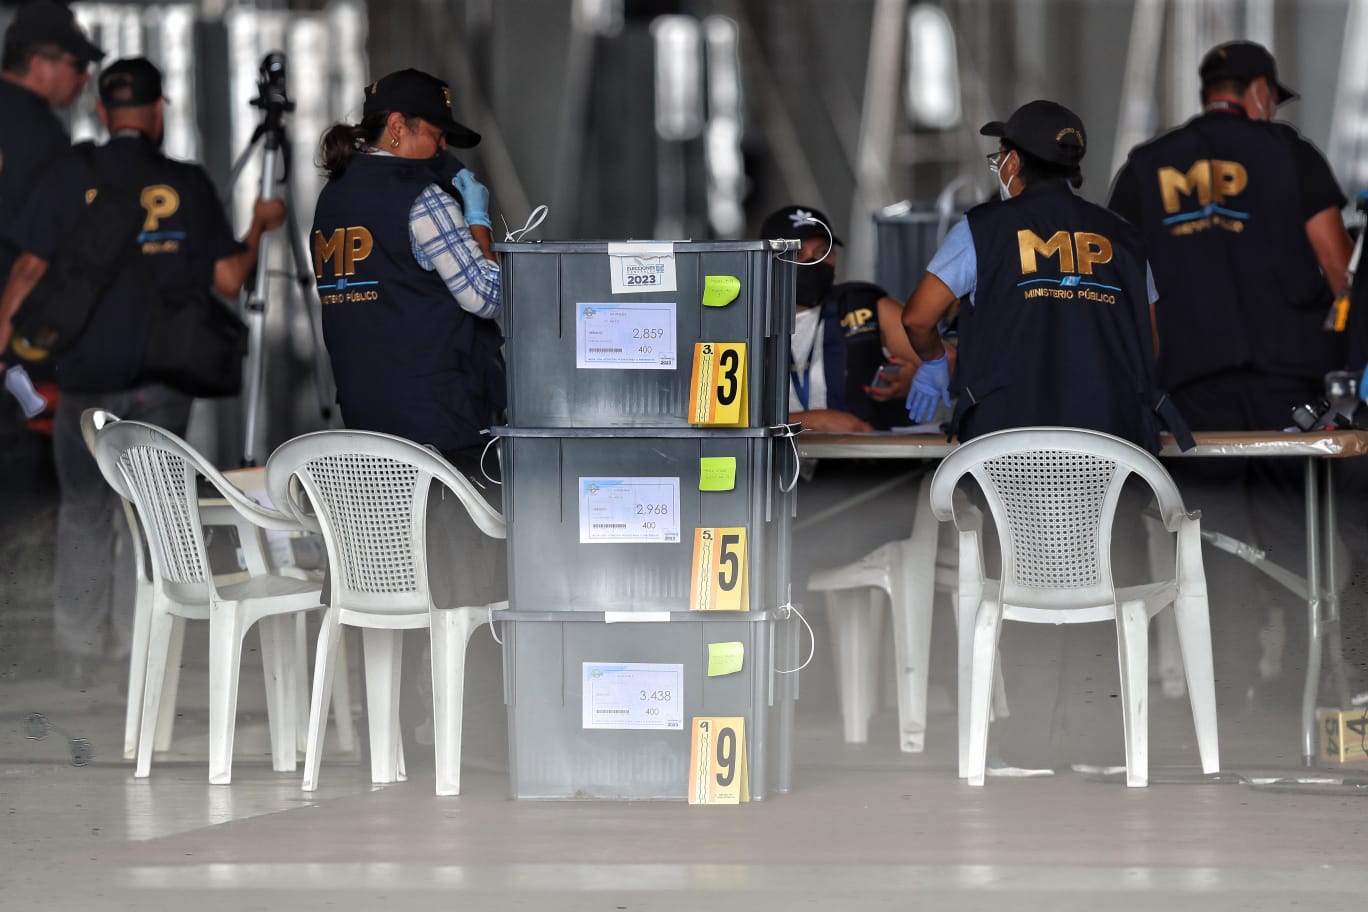 Fiscales del MP revisan cajas electorales en una sede del TSE, acciones que han sido criticadas a escala nacional e internacional. (Foto Prensa Libre: Esbin García)